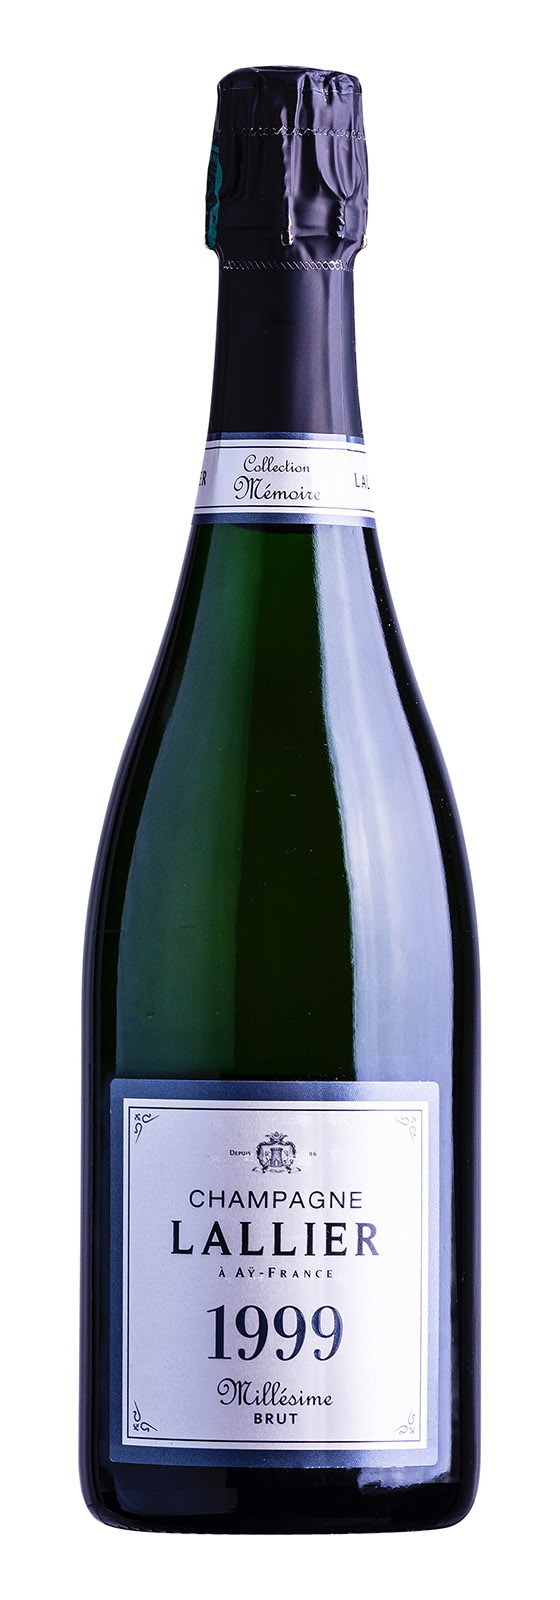 Champagne AOC Collection Mémoire Brut Millésime 1999